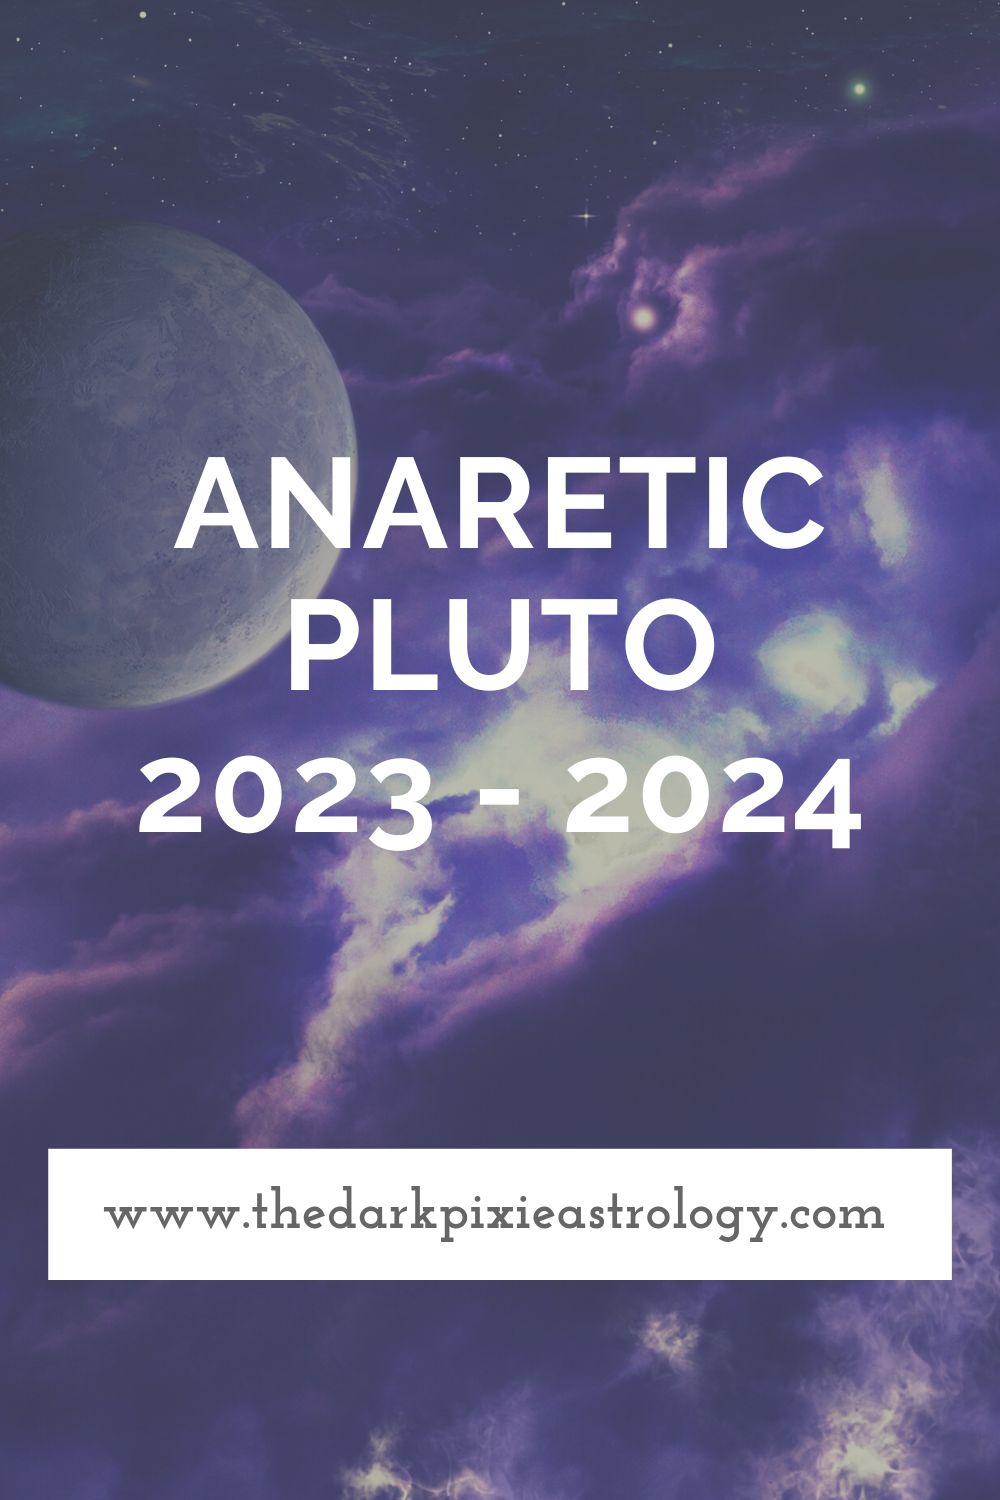 Anaretic Pluto 2023 2024 The Dark Pixie Astrology